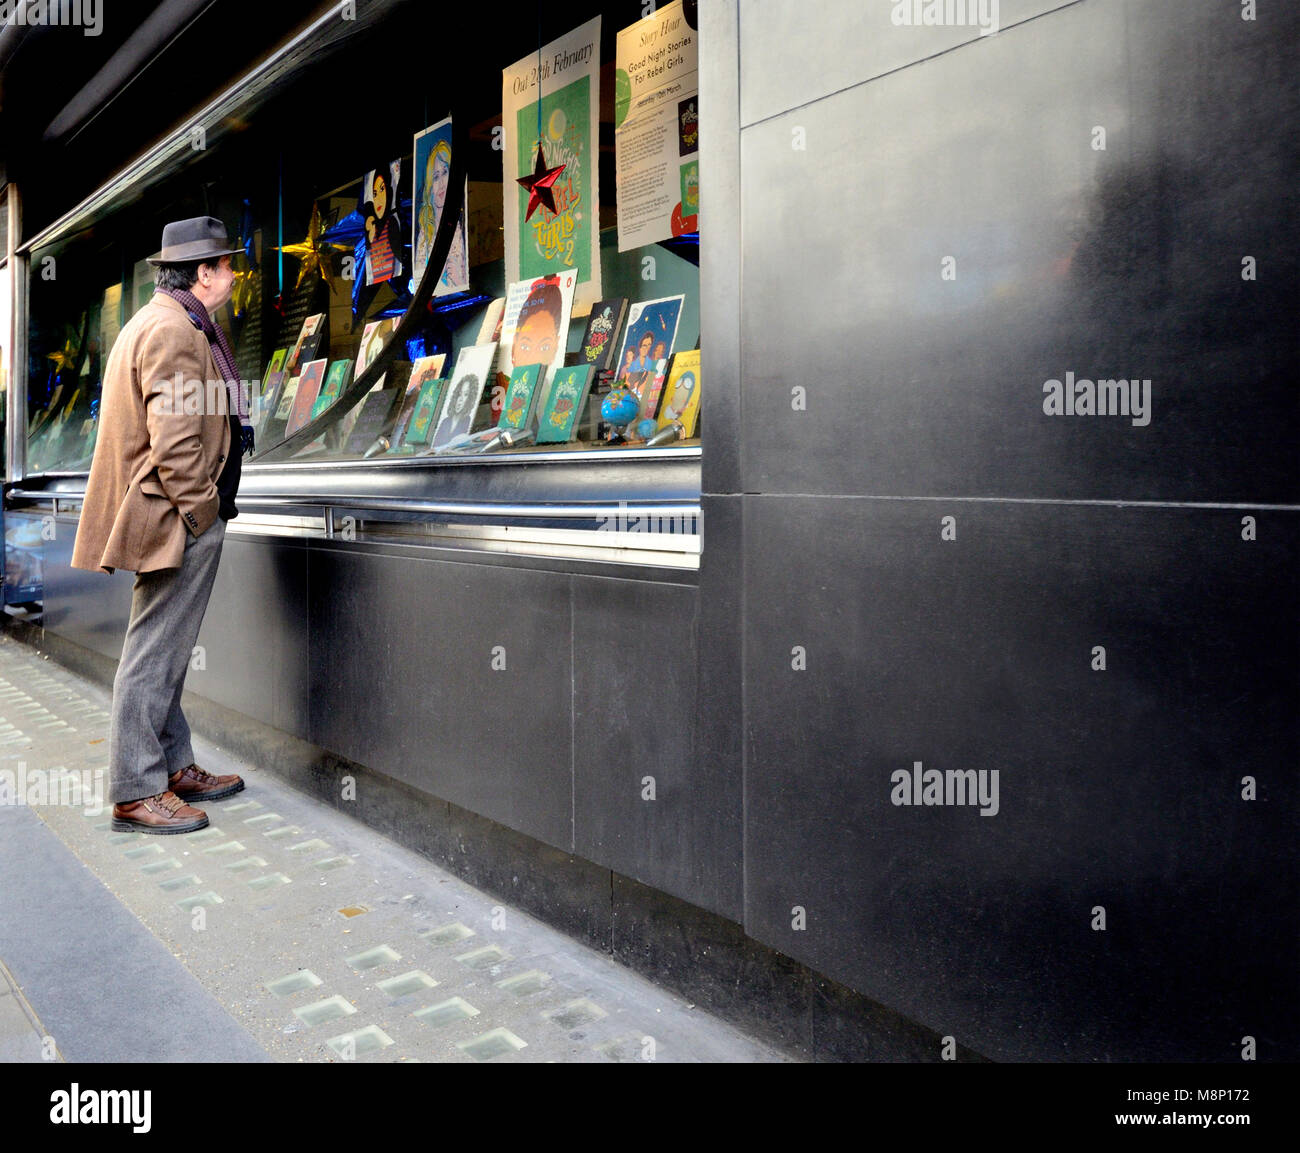 Londra, Inghilterra, Regno Unito. Uomo che guarda la finestra di visualizzazione della libreria Waterstones in Piccadilly Foto Stock